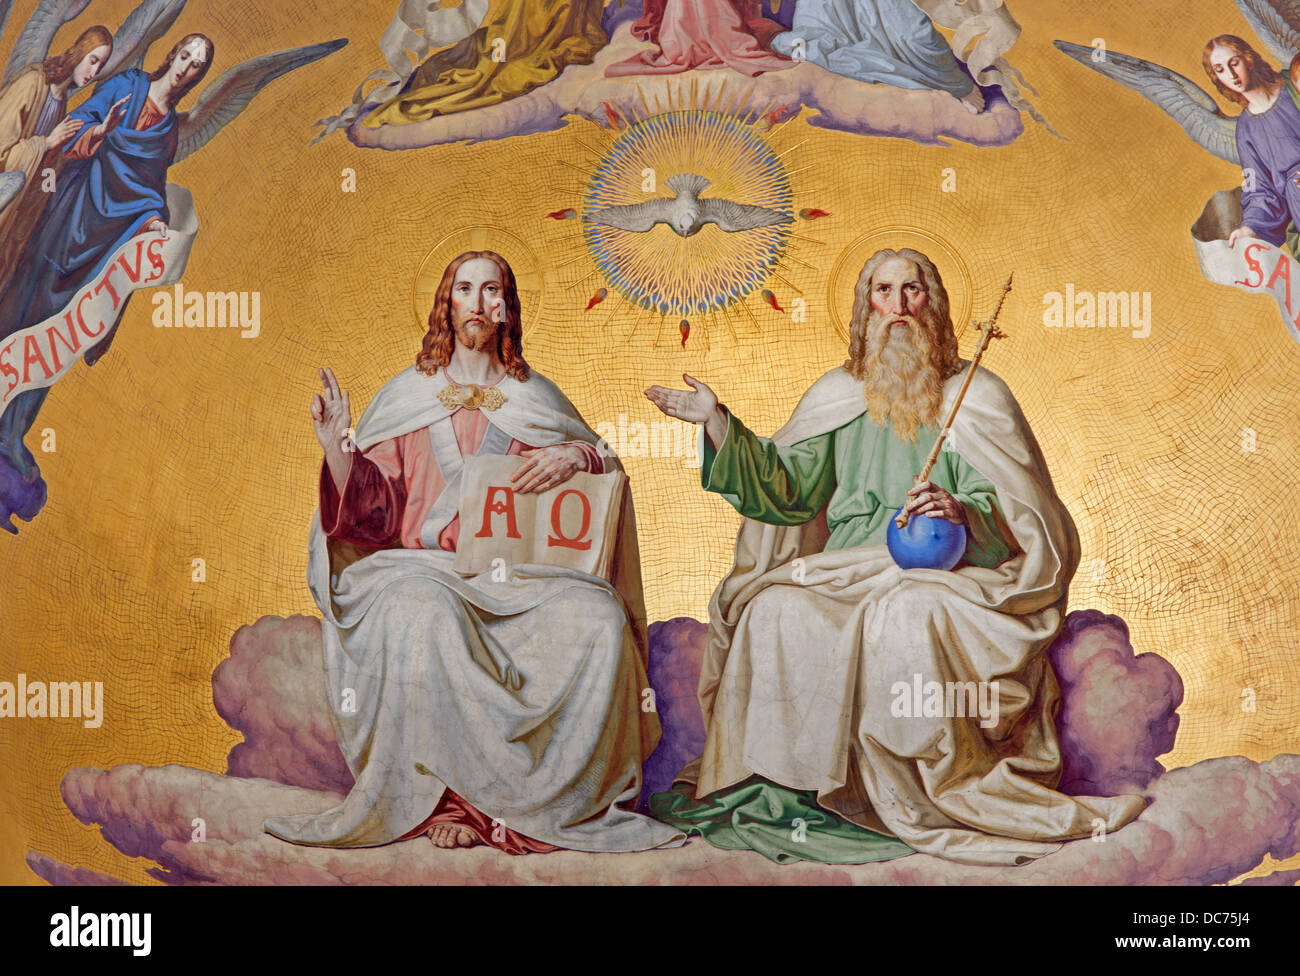 Wien - Juli 27: Heilige Dreifaltigkeit. Detail von Fresco Szene aus der Apokalypse vom 19. Jhdt. Stockfoto